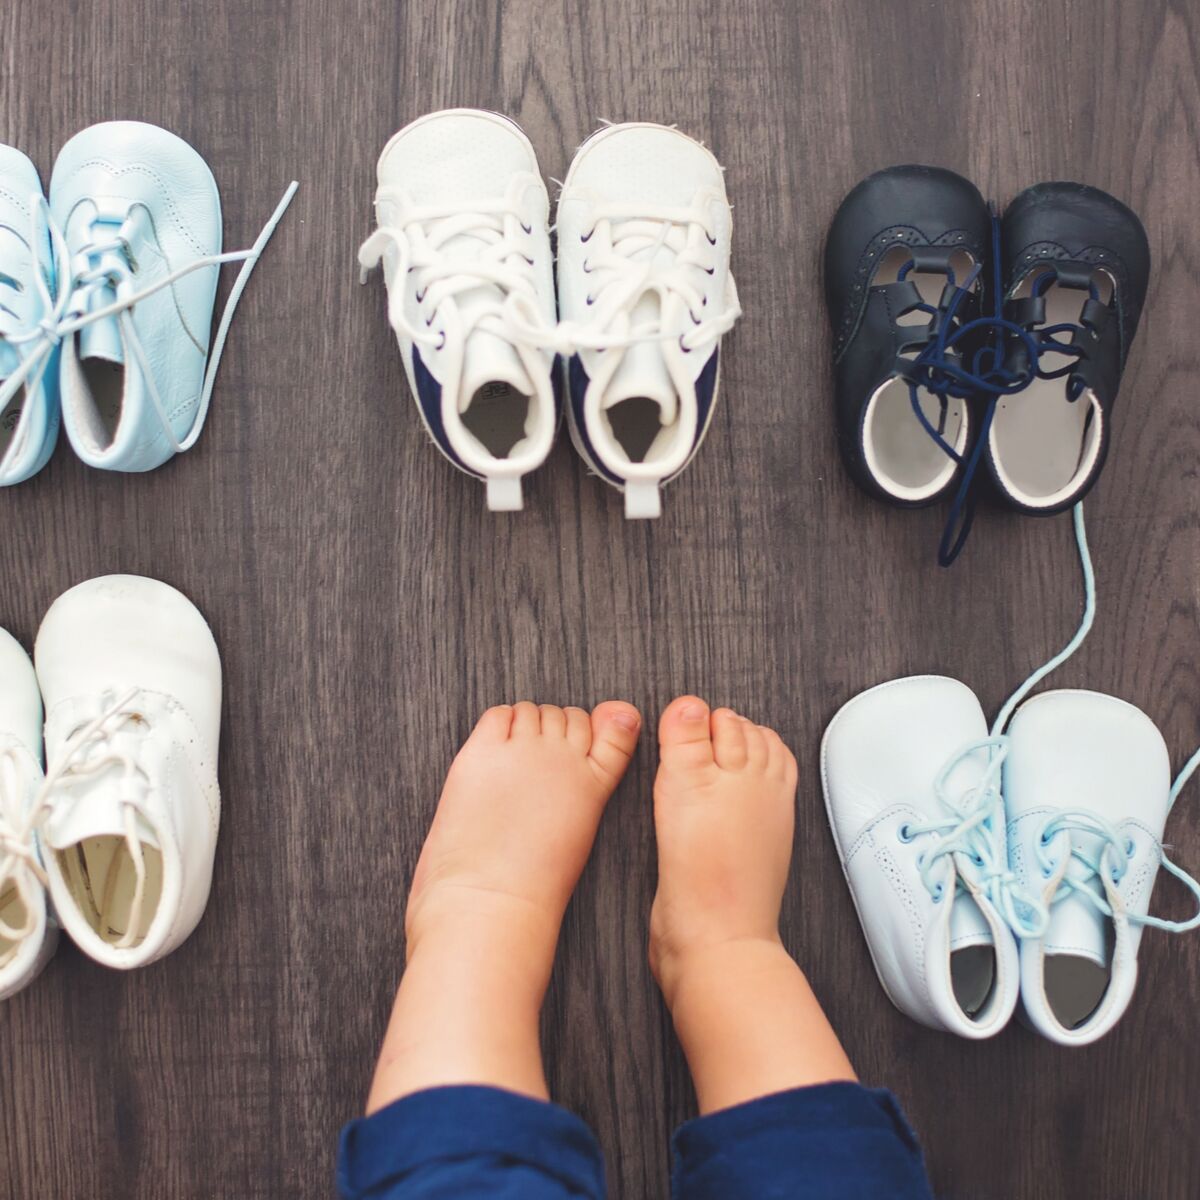 Comment aider bébé à enfiler ses chaussettes et chaussures